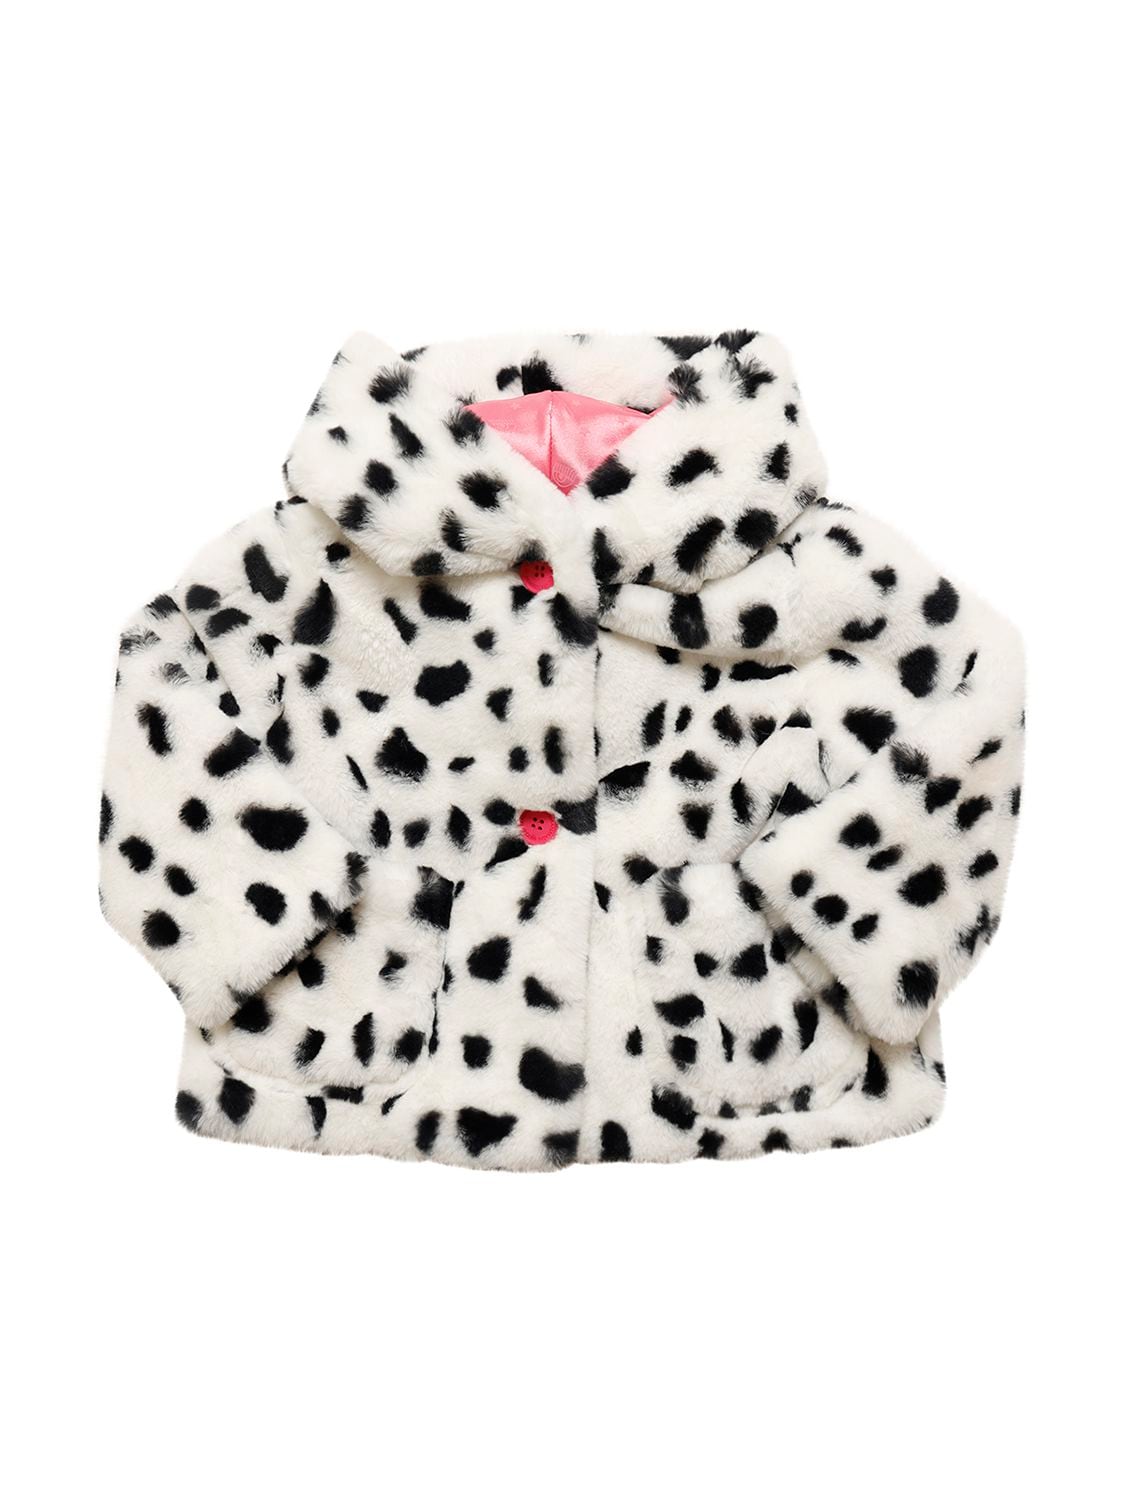 CHIARA FERRAGNI Dalmatian Printed Faux Fur Coat for Kids